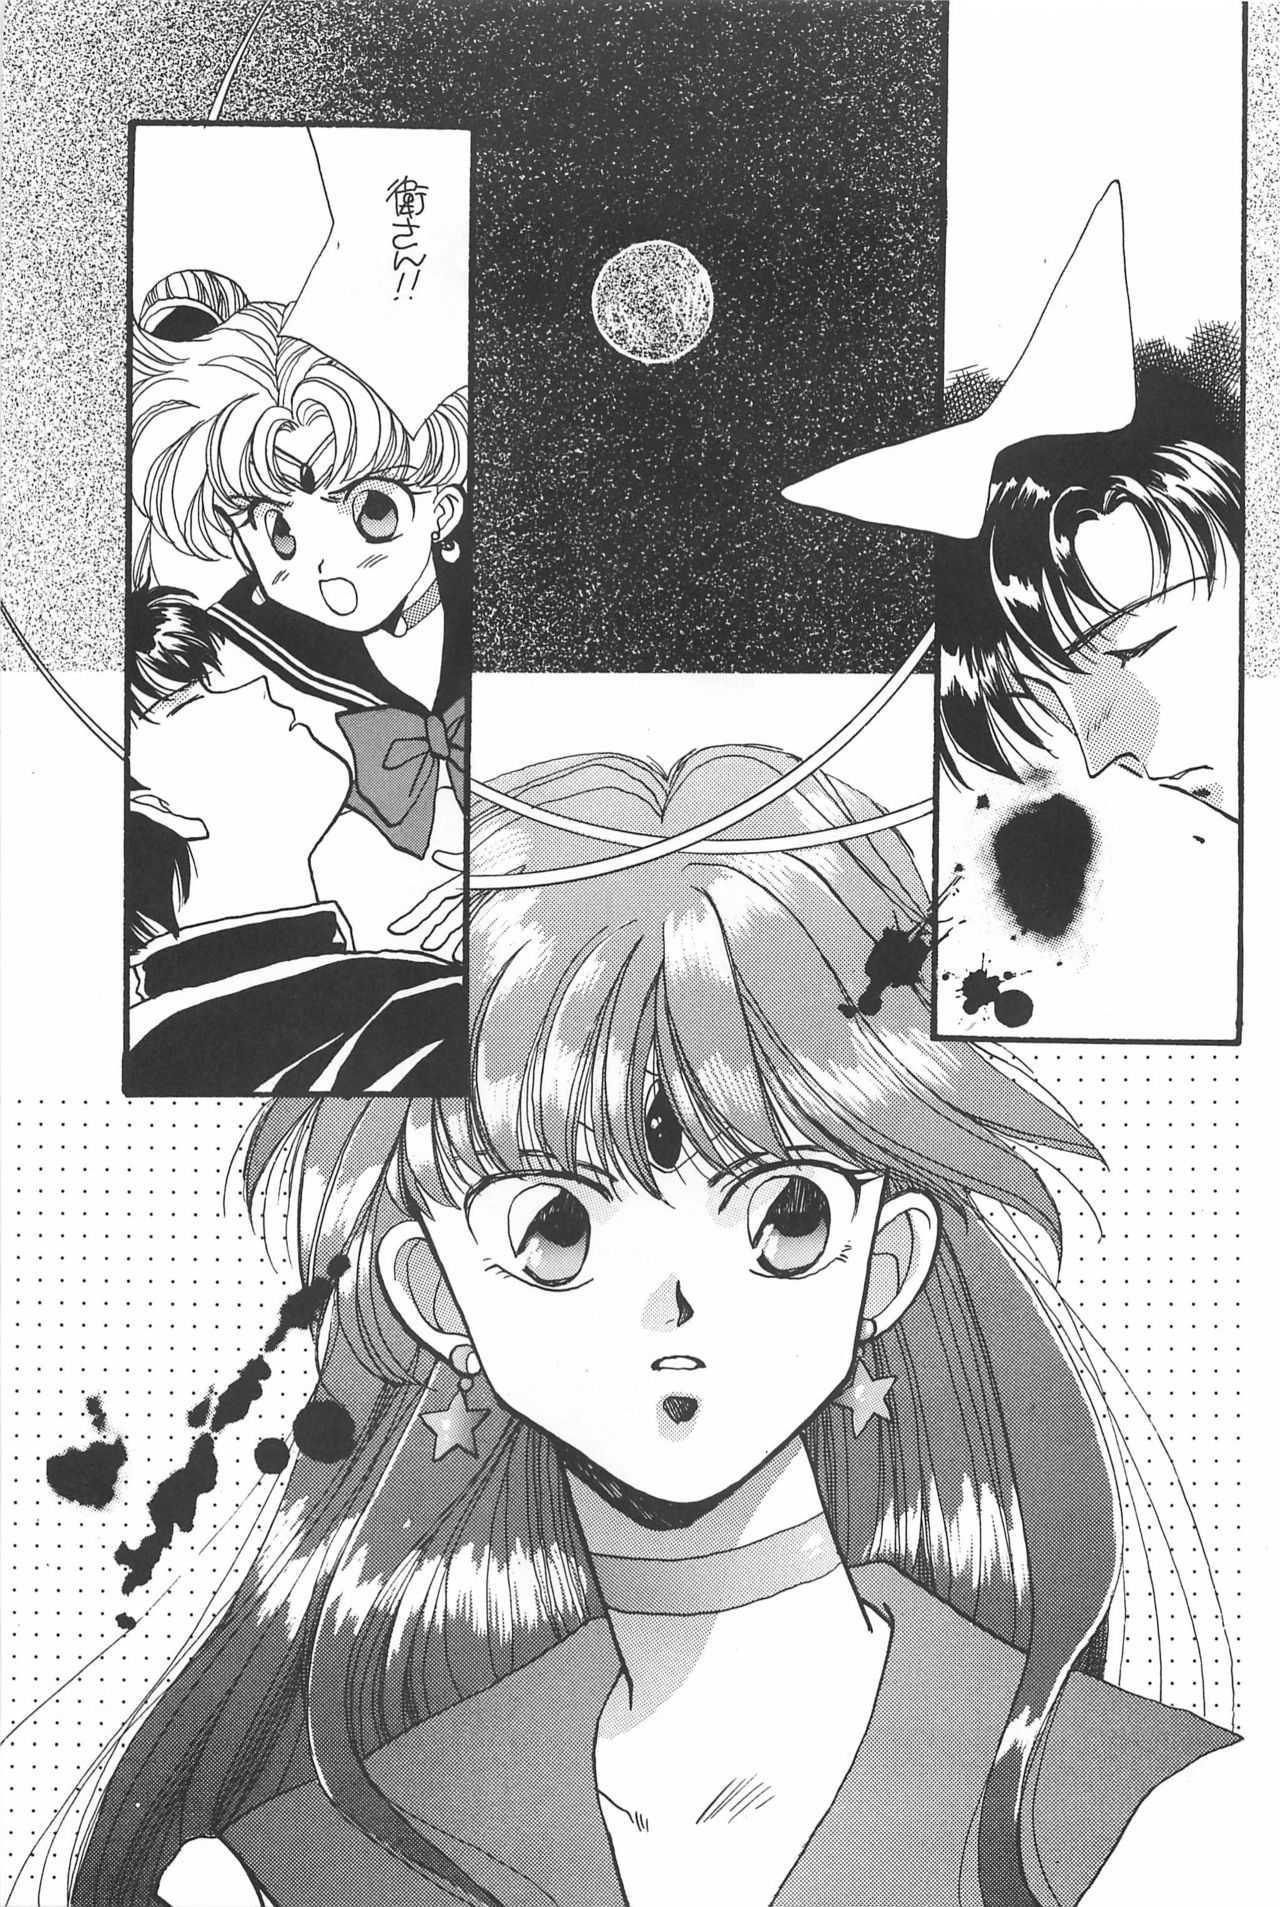 [Hello World (Muttri Moony)] Kaze no You ni Yume no You ni - Sailor Moon Collection (Sailor Moon) 118